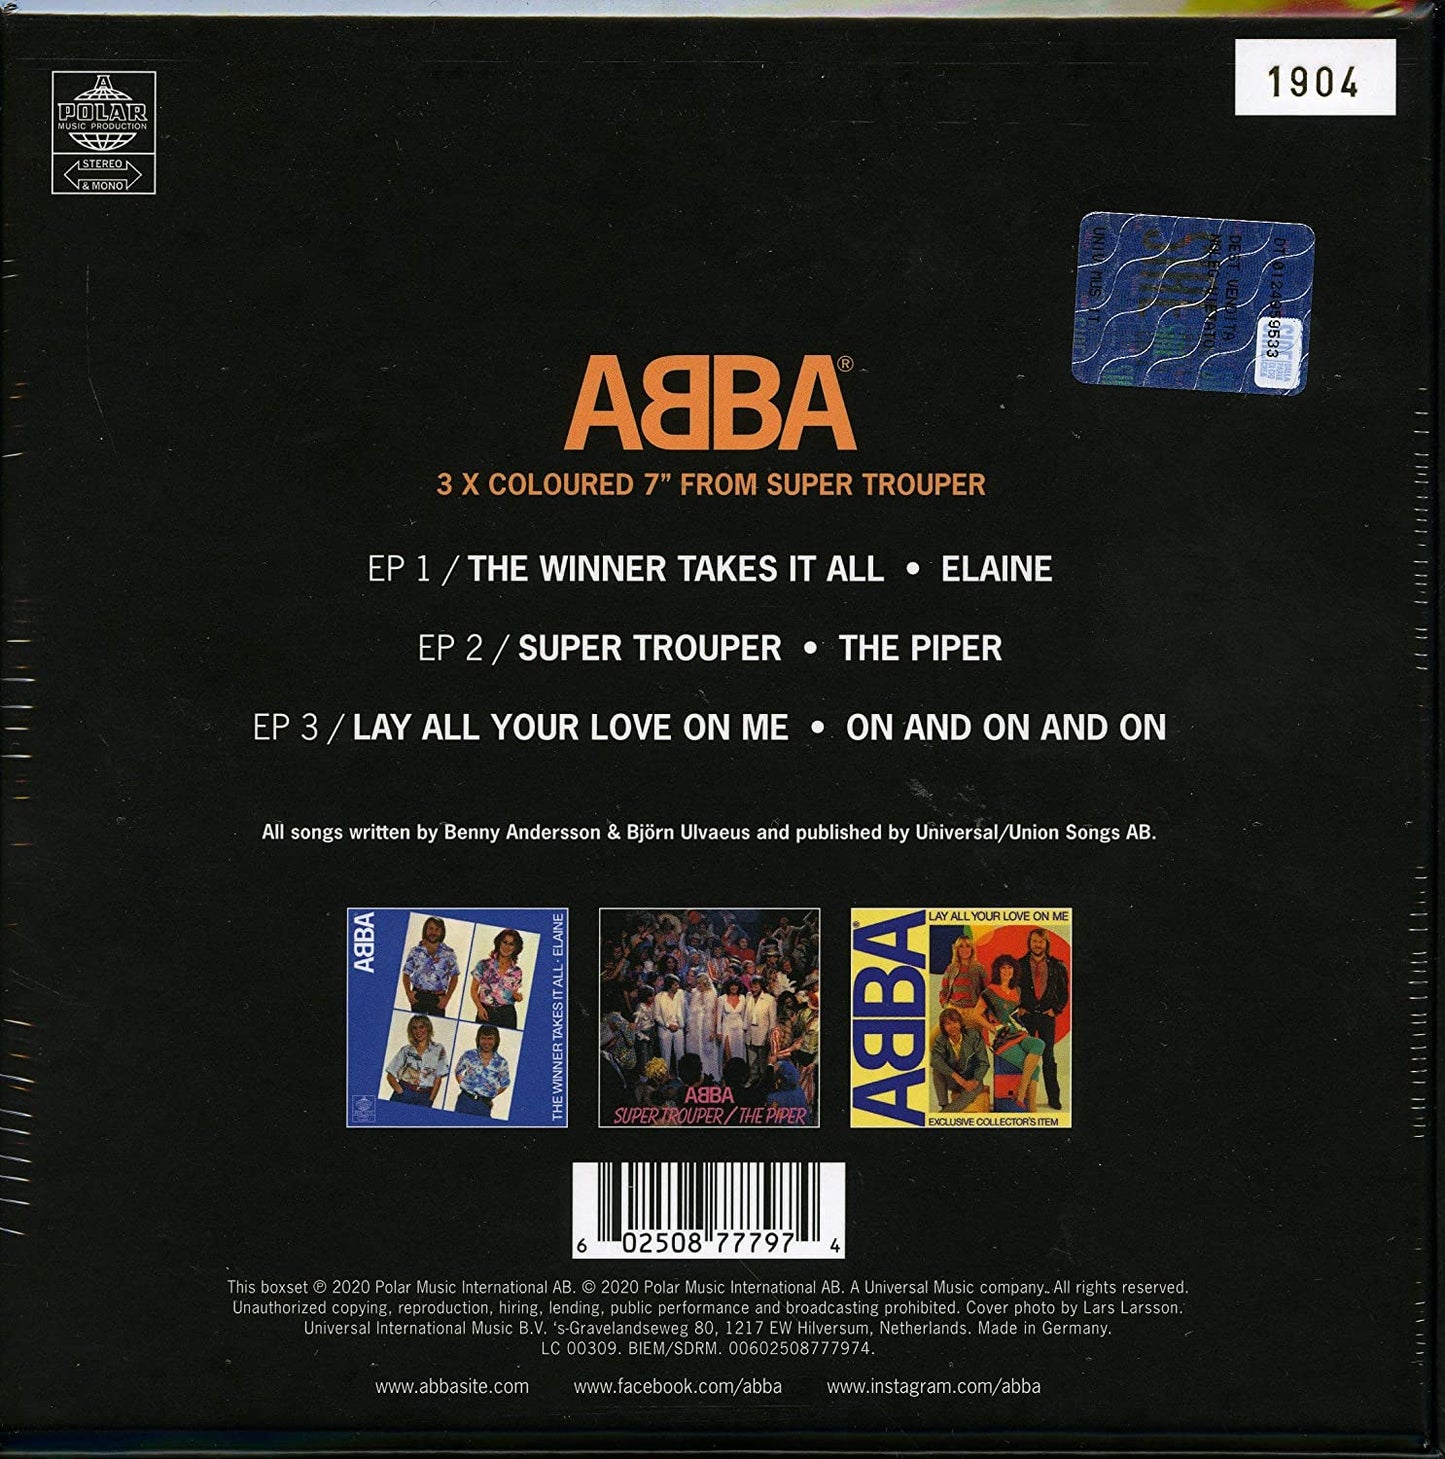 ABBA - Super Trouper - 7" Box